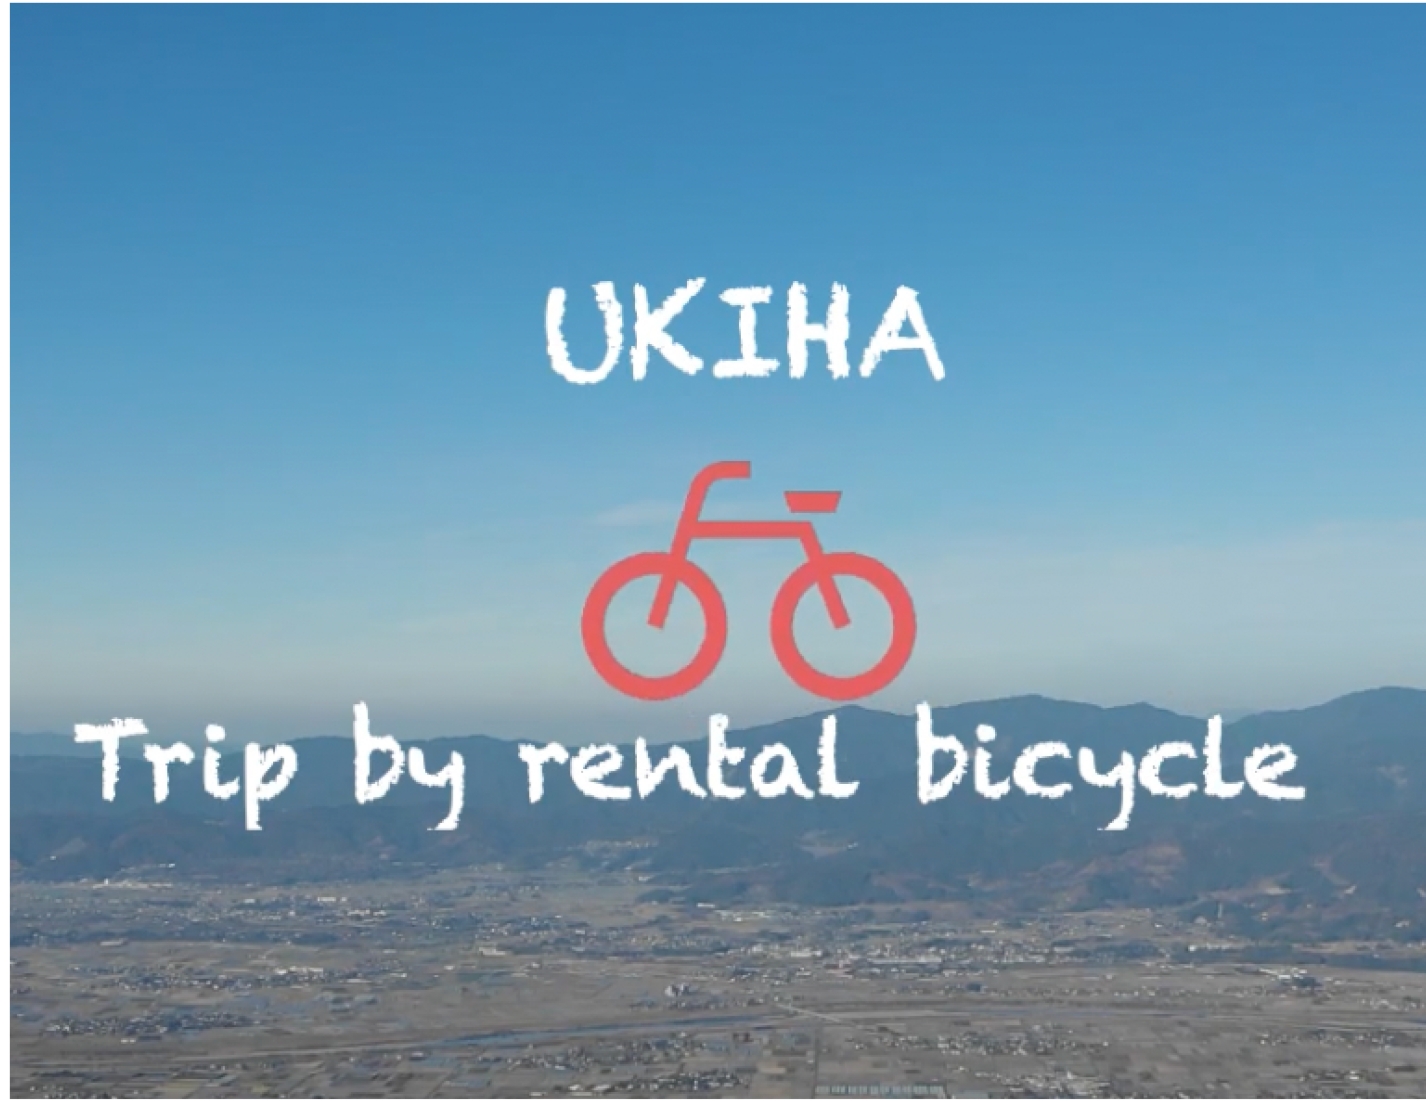 UKIHA trip by rental bicycle〜レンタサイクルで楽しむ、福岡県うきは旅〜